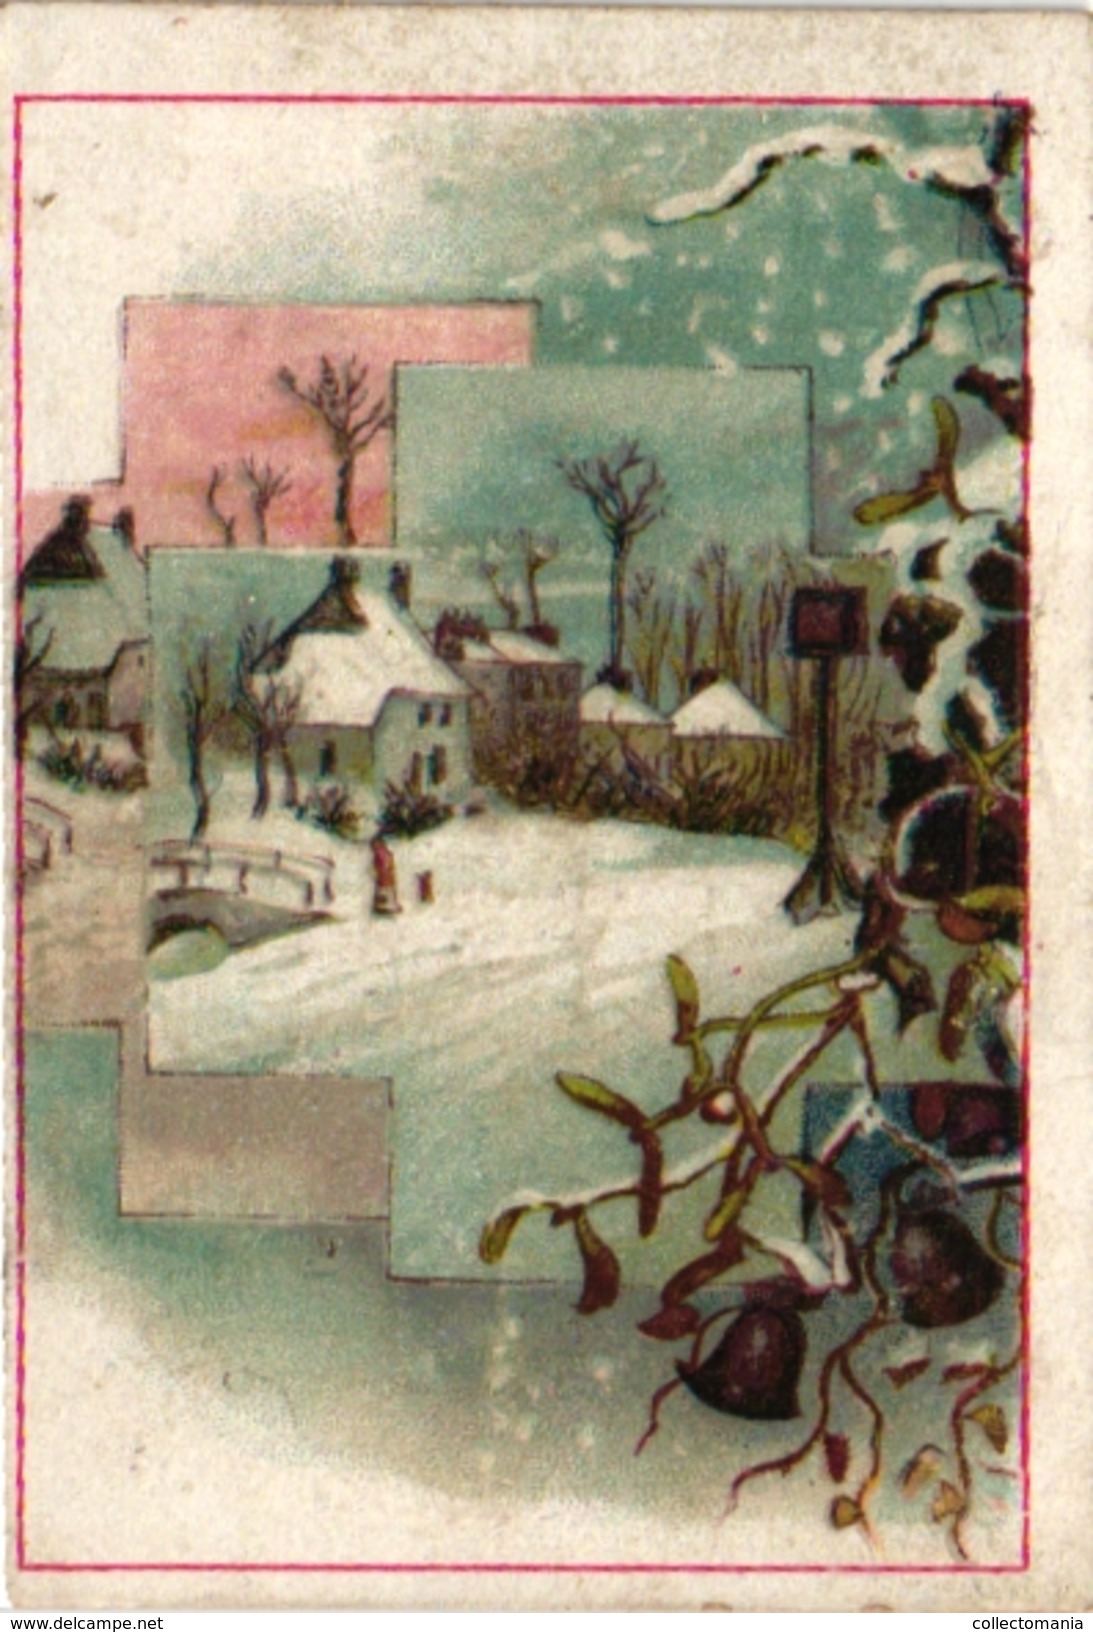 7 Carte de Visite Trade Card Chromo Nieuwjaarsgroet de Courant Weekblad de Aanwijzer Morgenblad 1885 dagblad weekblad